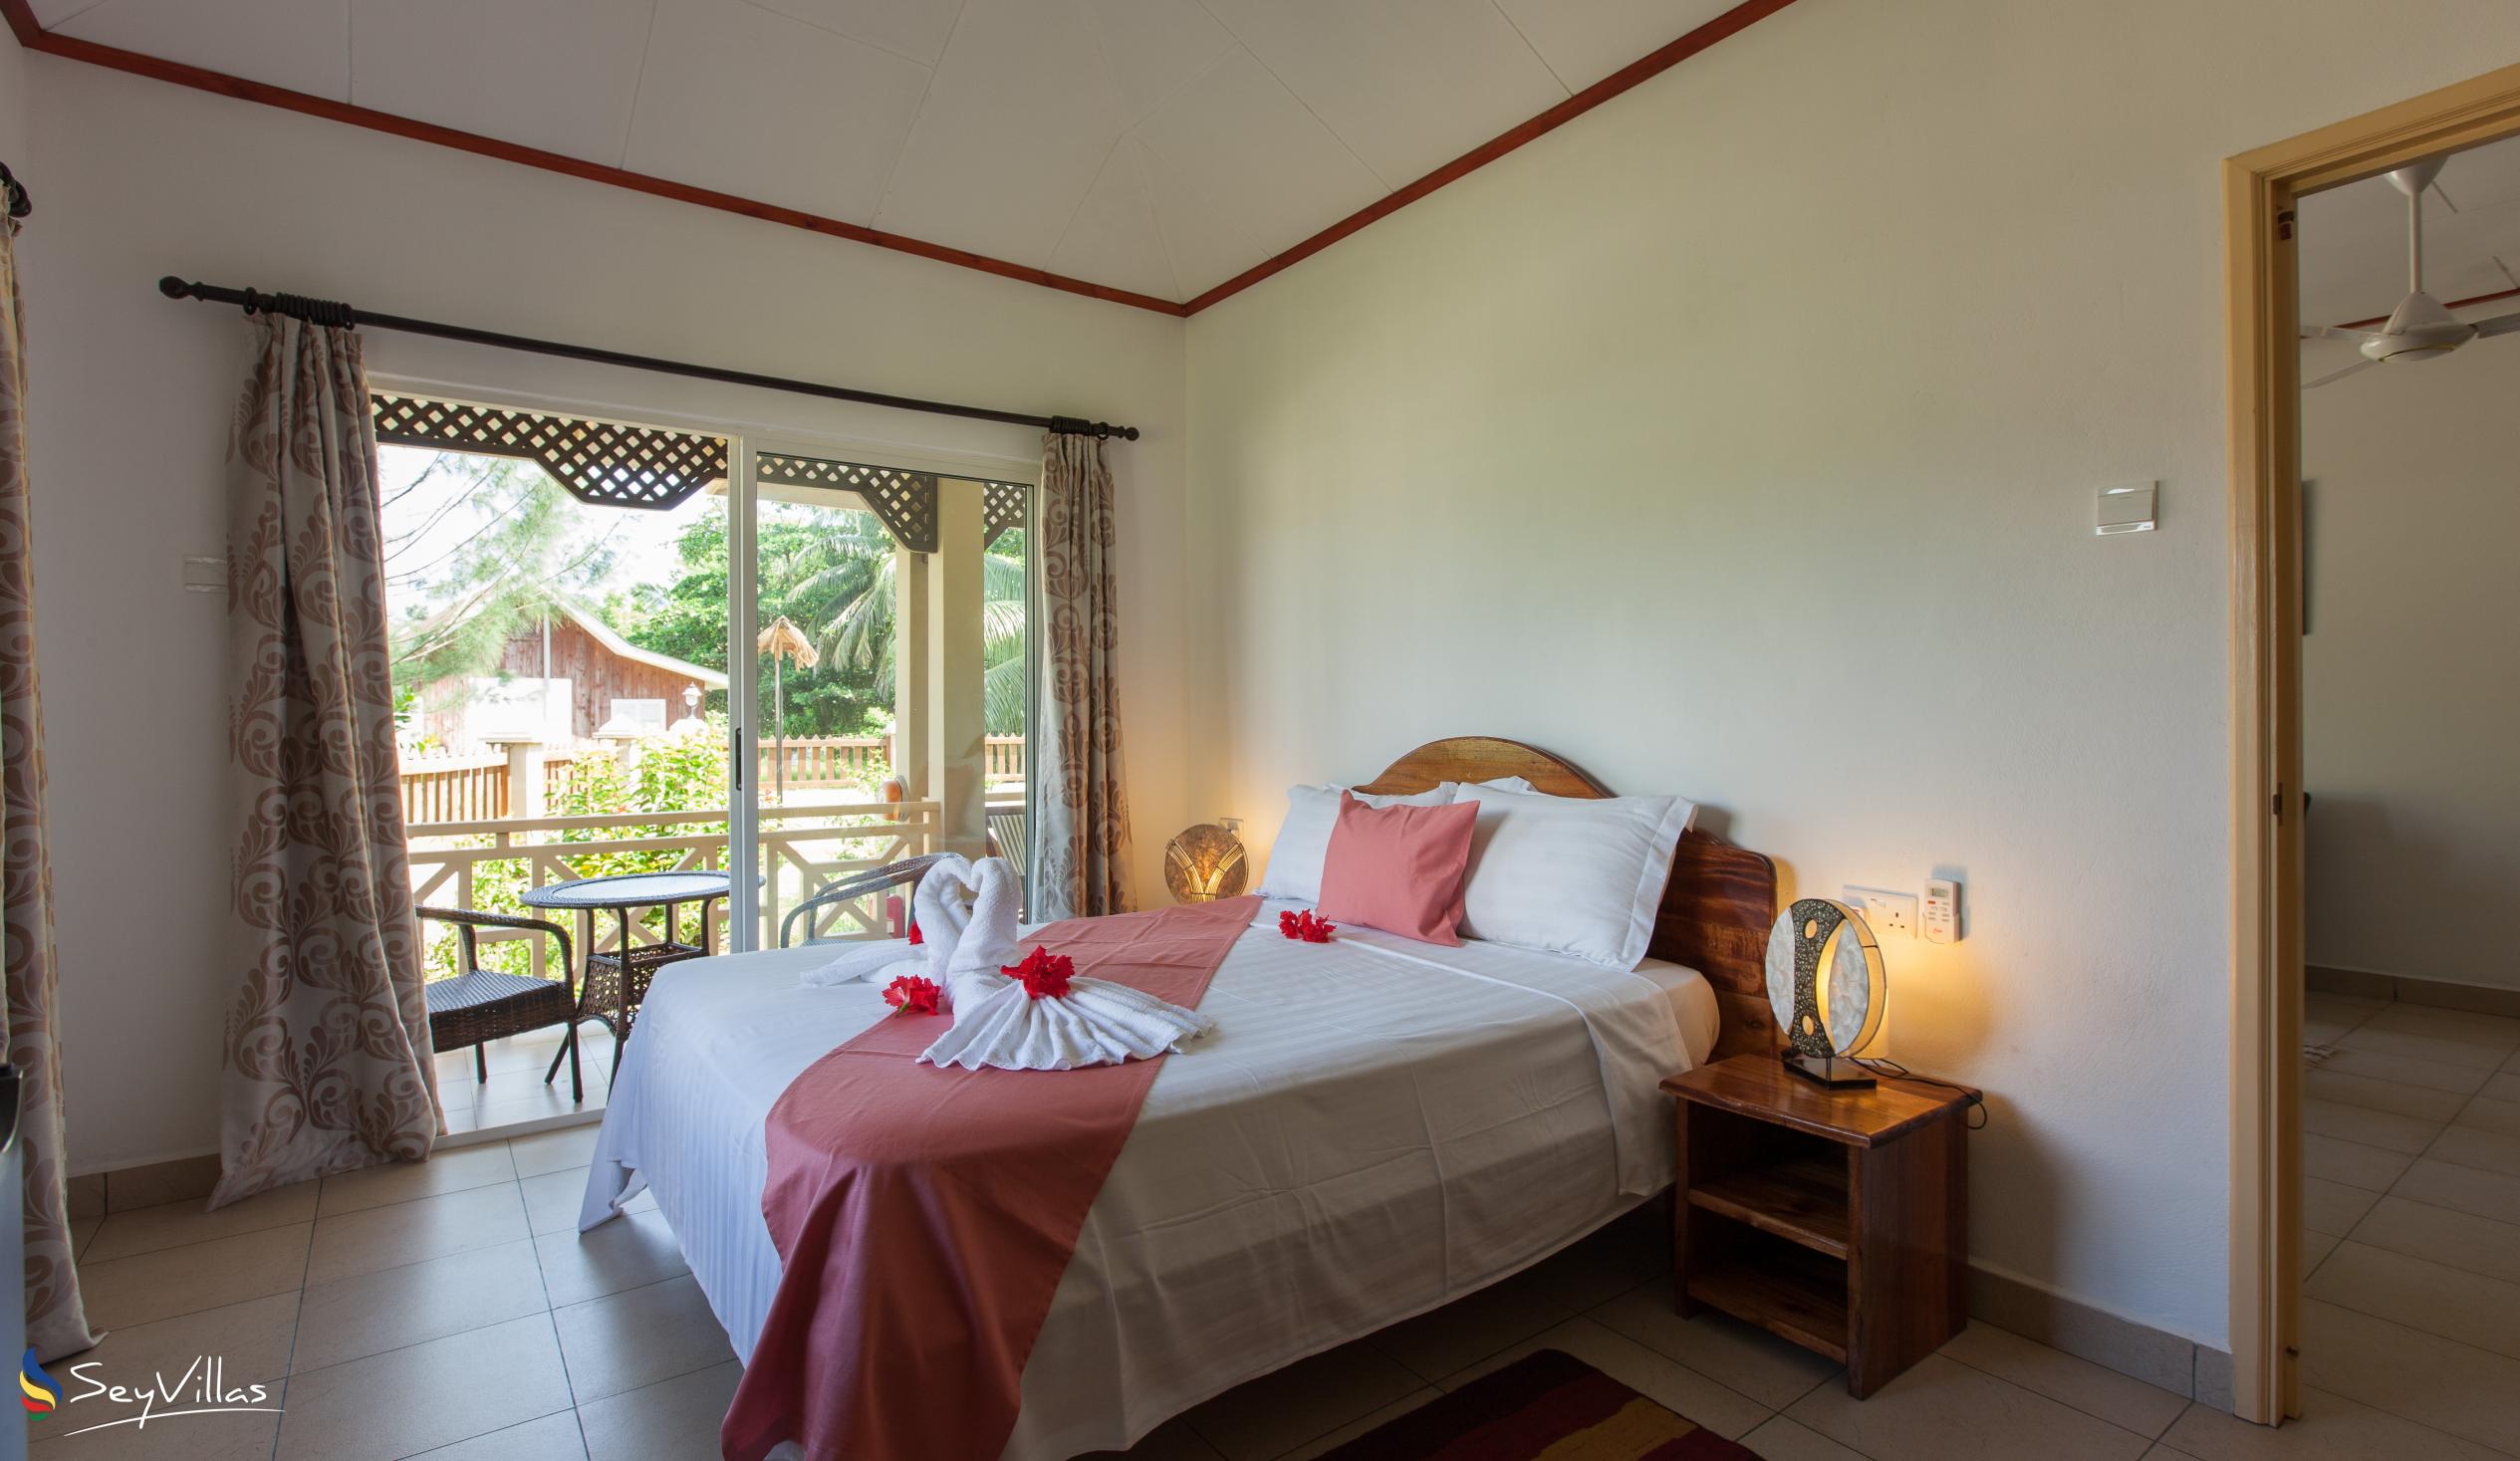 Photo 55: Hostellerie La Digue - 2-Bedroom Chalet - La Digue (Seychelles)